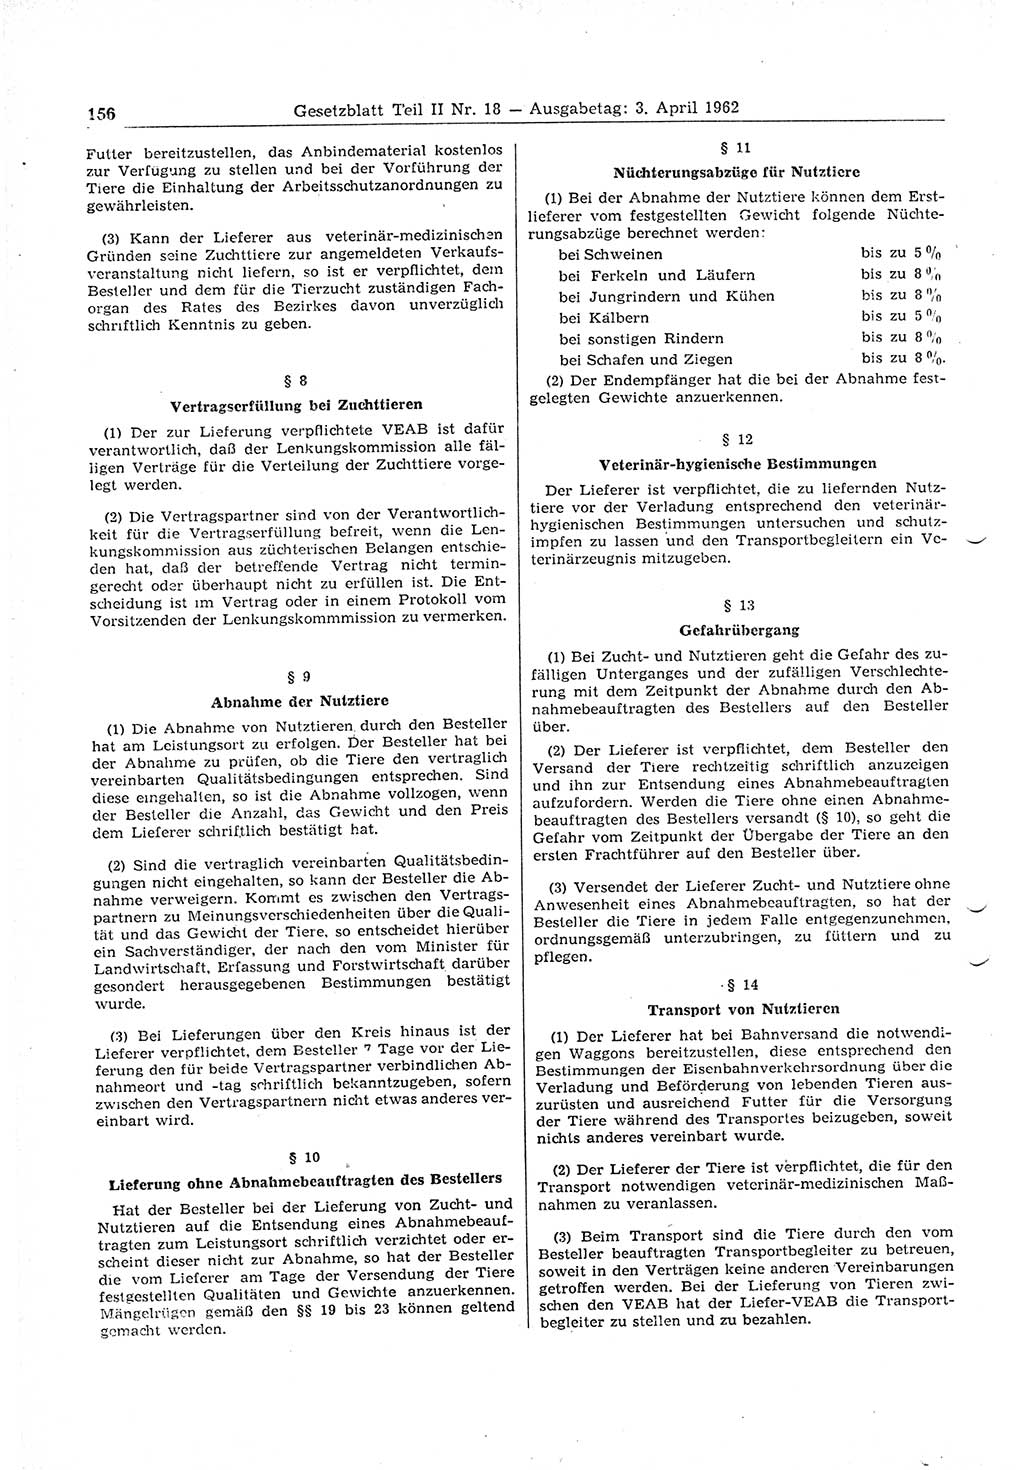 Gesetzblatt (GBl.) der Deutschen Demokratischen Republik (DDR) Teil ⅠⅠ 1962, Seite 156 (GBl. DDR ⅠⅠ 1962, S. 156)